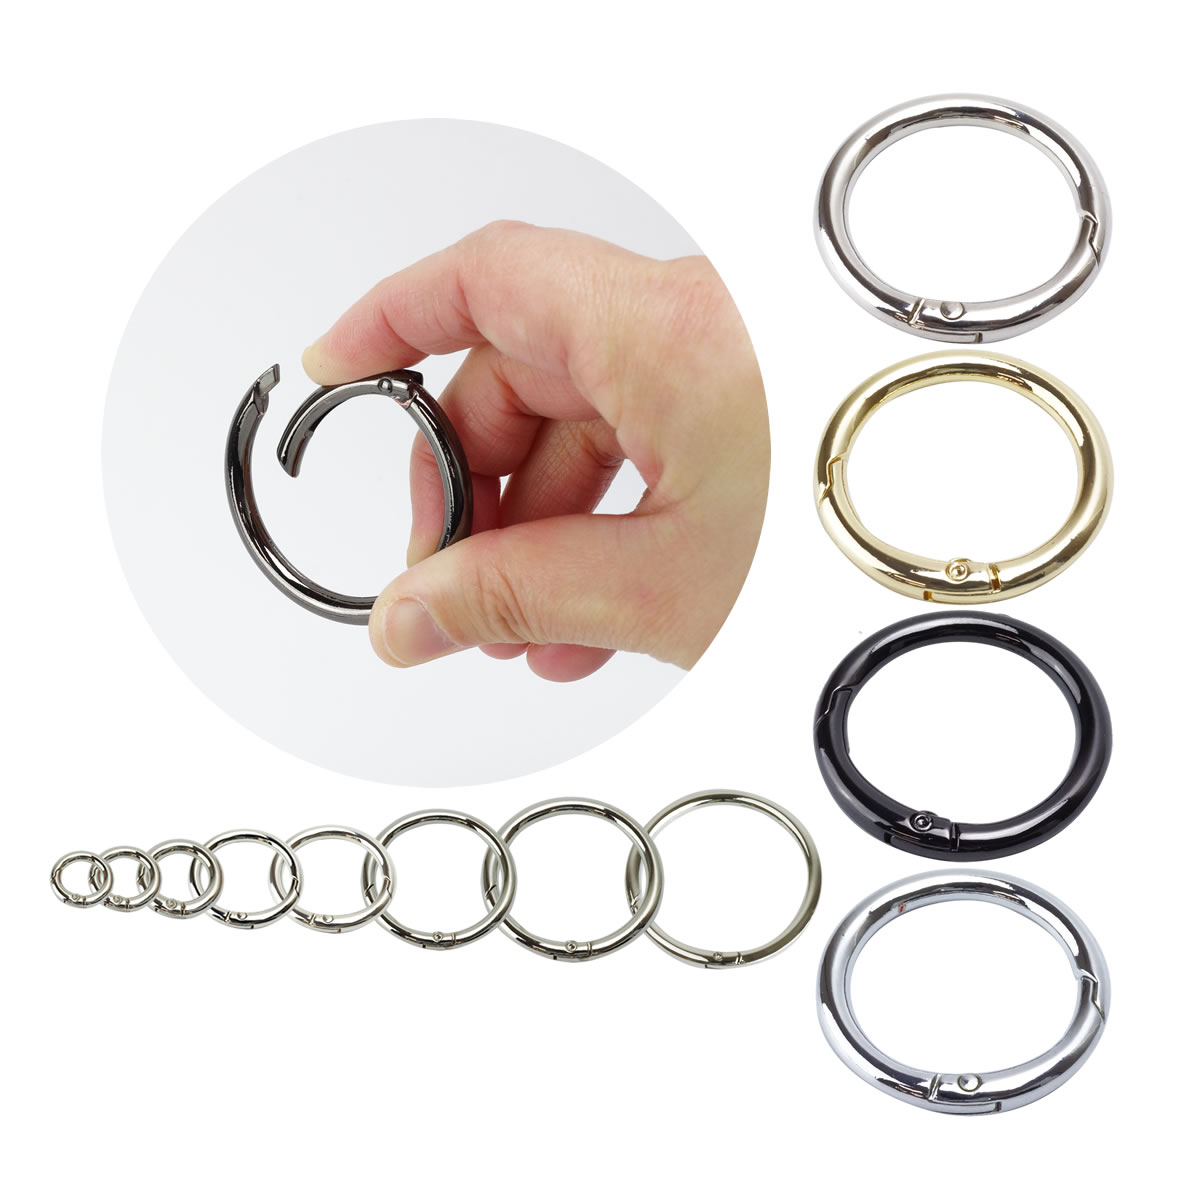 kalabina ring round Circle kalabina key ring kalabina round circle can key holder bag charm outdoor key 9mm 12mm 15mm 20mm 25mm 32mm 38mm 50mm